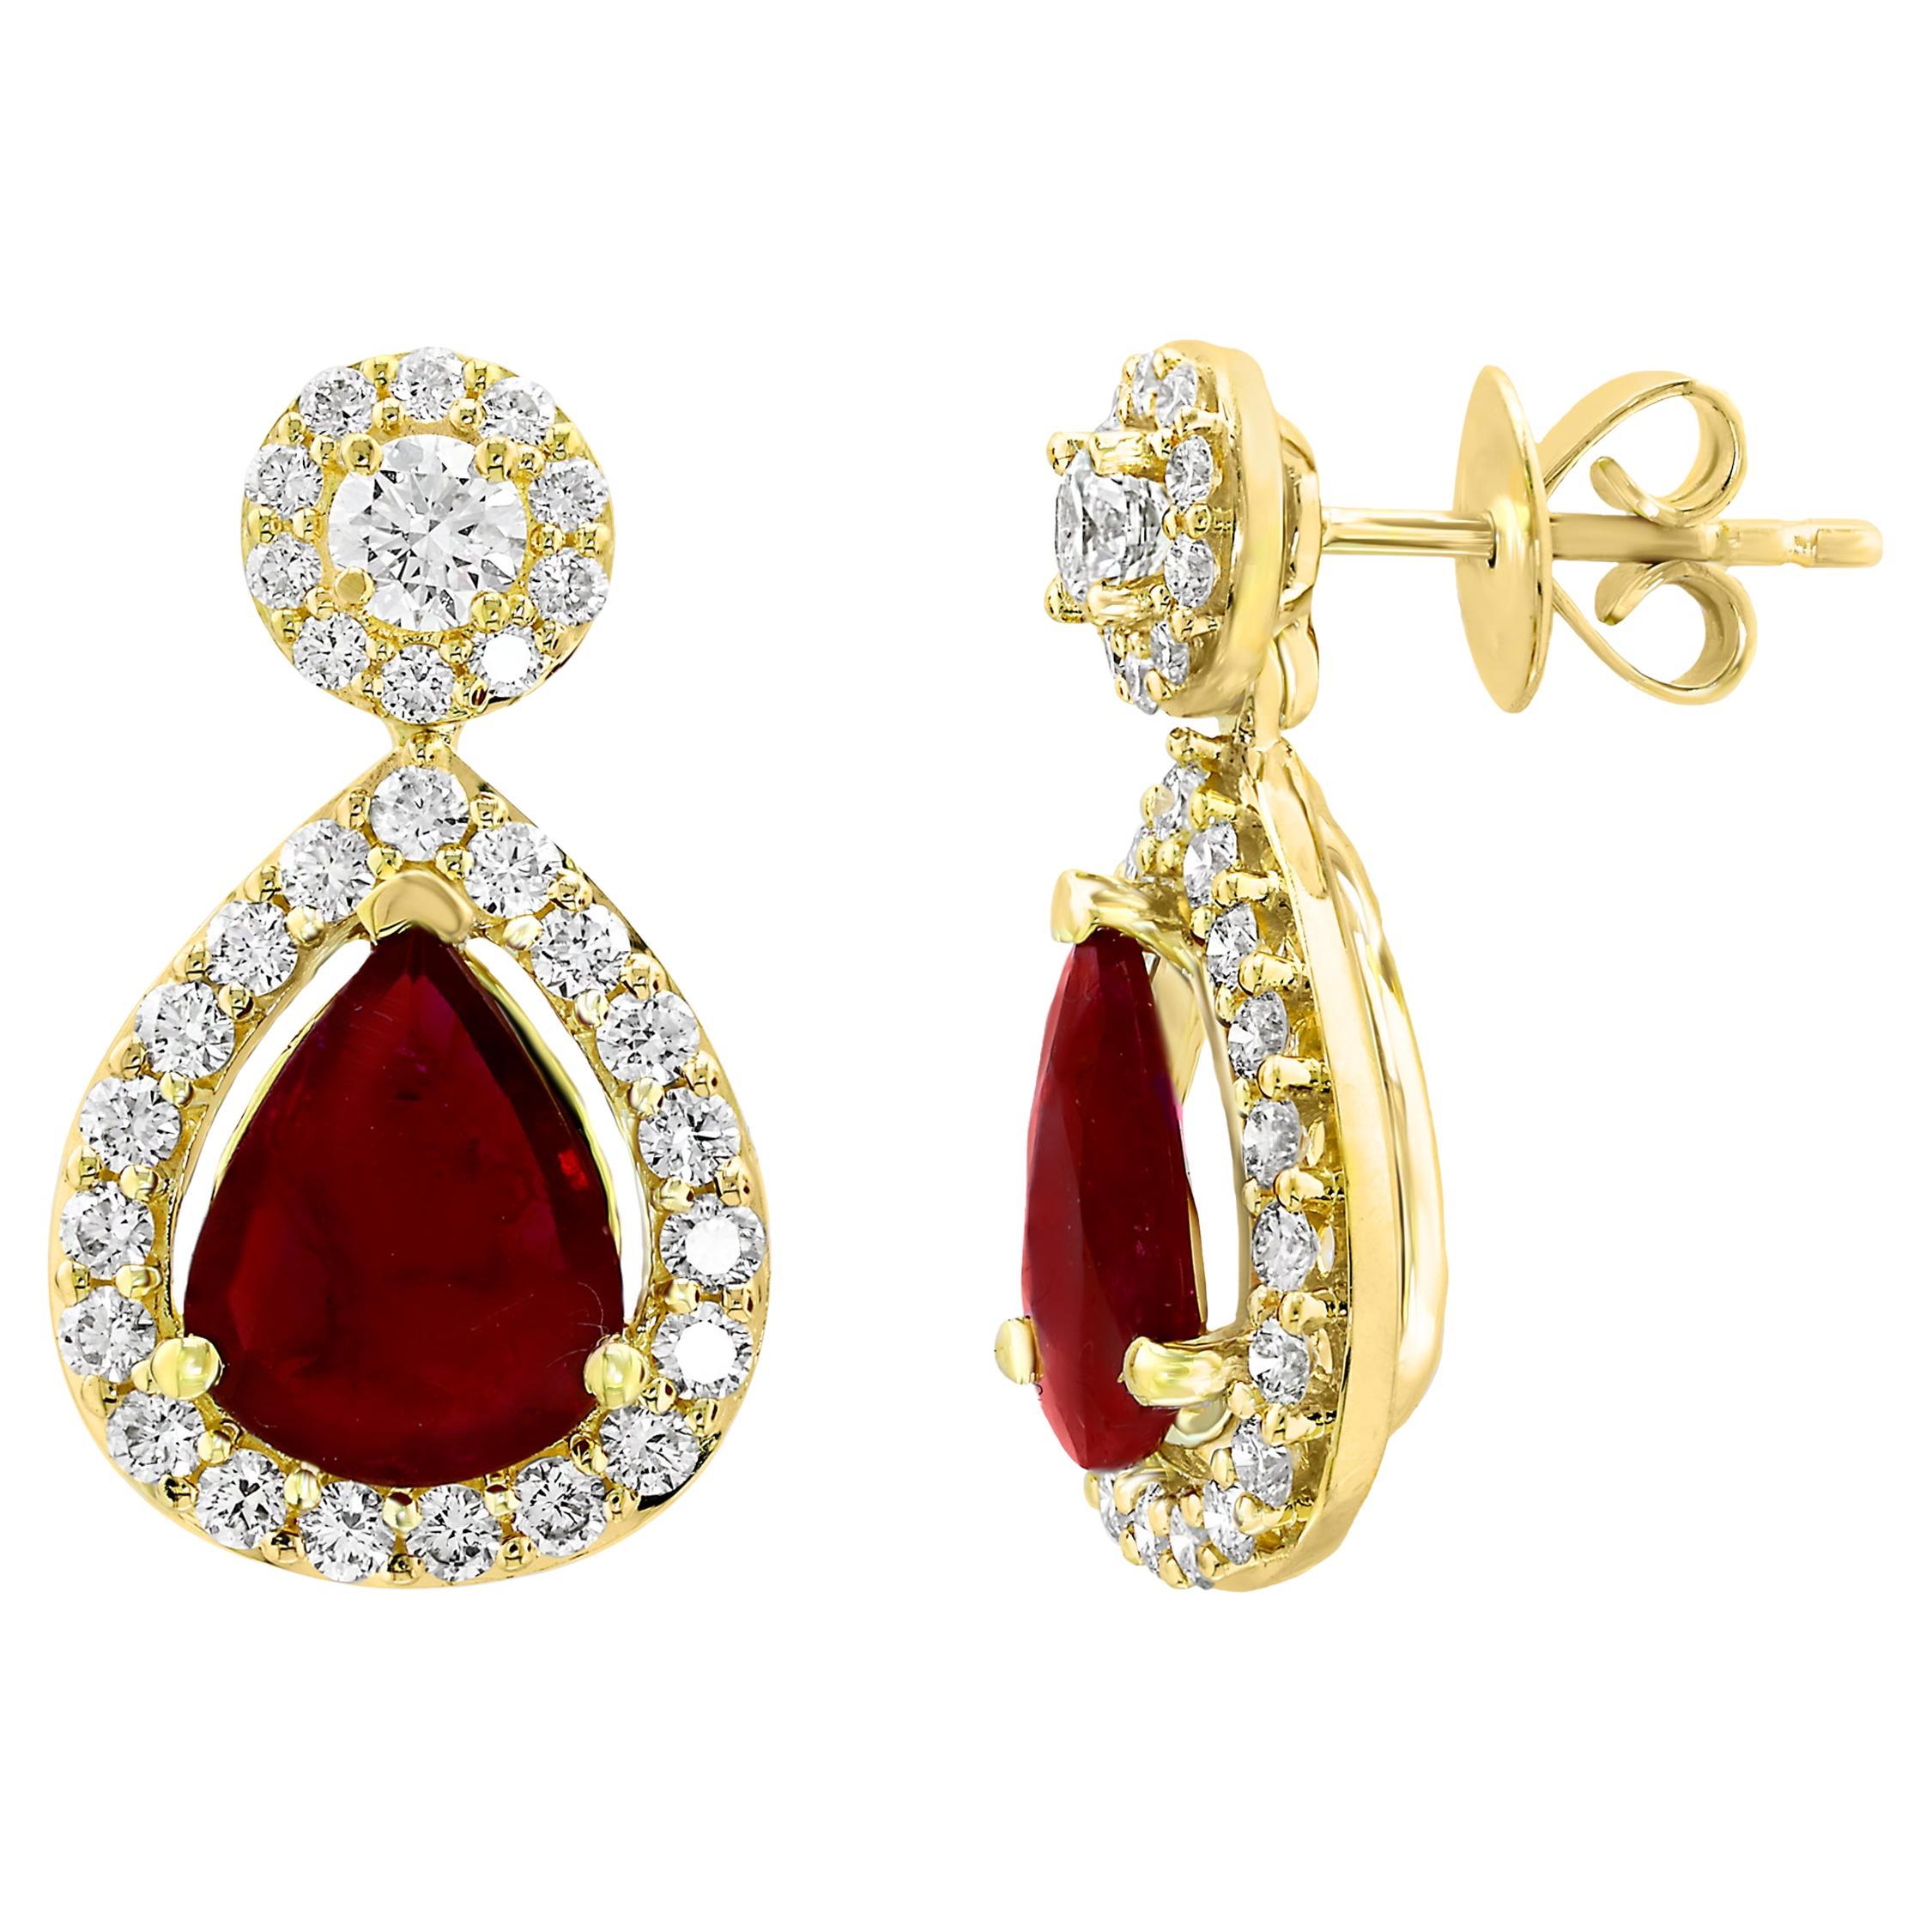 3.56 Carat of Pear Shape Ruby Diamond Drop Earrings in 18K Yellow Gold For Sale